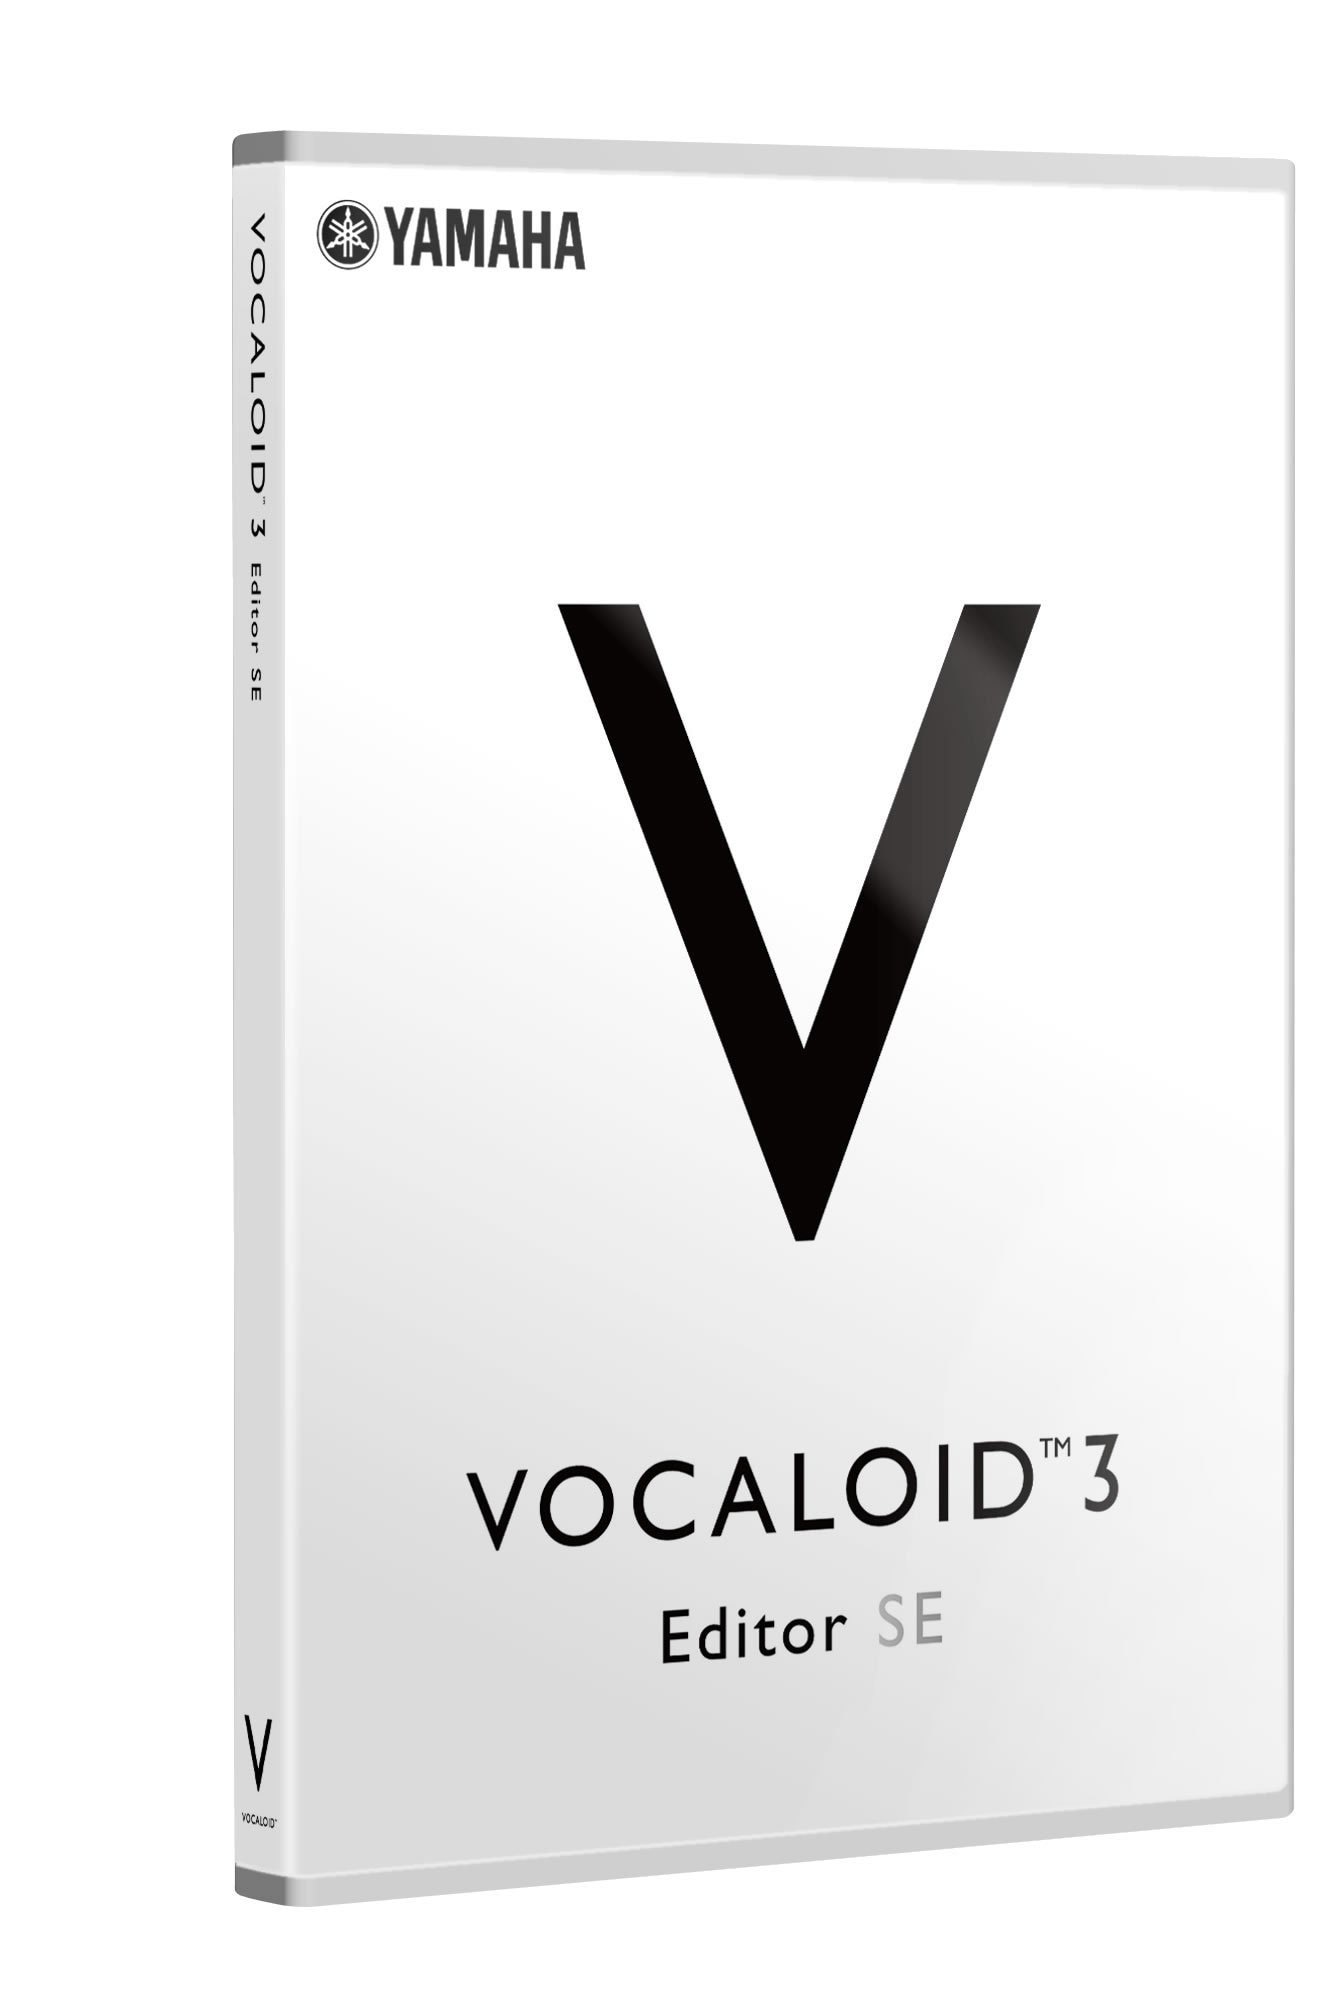 ボカロヤマハ | VOCALOID™ 3 Editor SE - VOCALOID™ - 概要 5220円